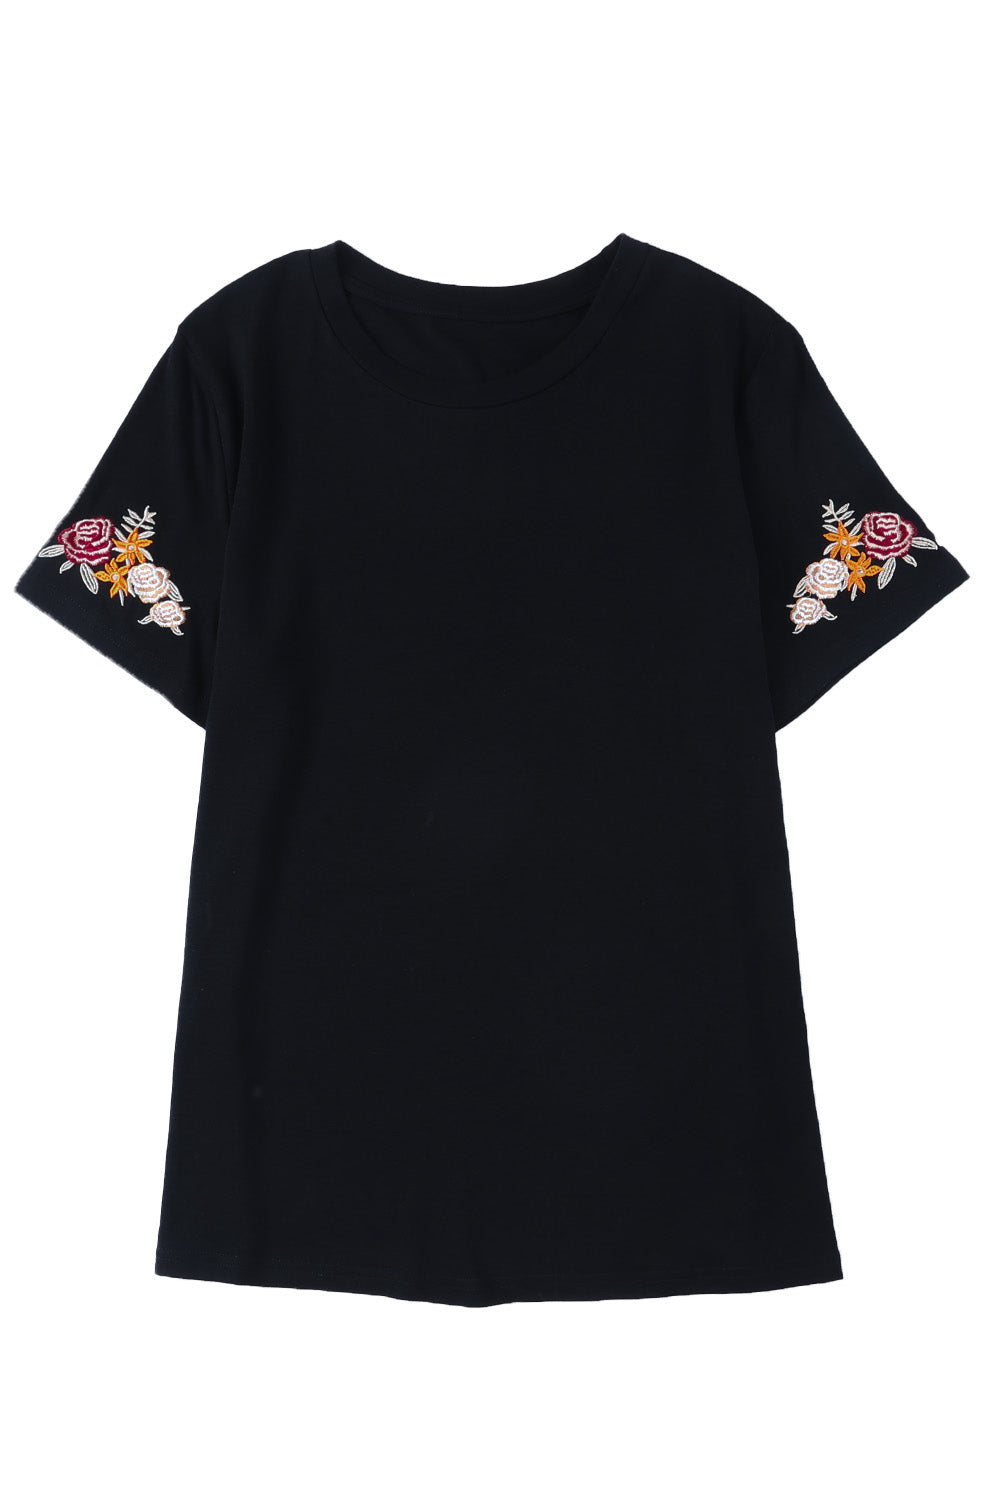 Črna majica s kratkimi rokavi in ​​okroglim ovratnikom, vezenim cvetjem